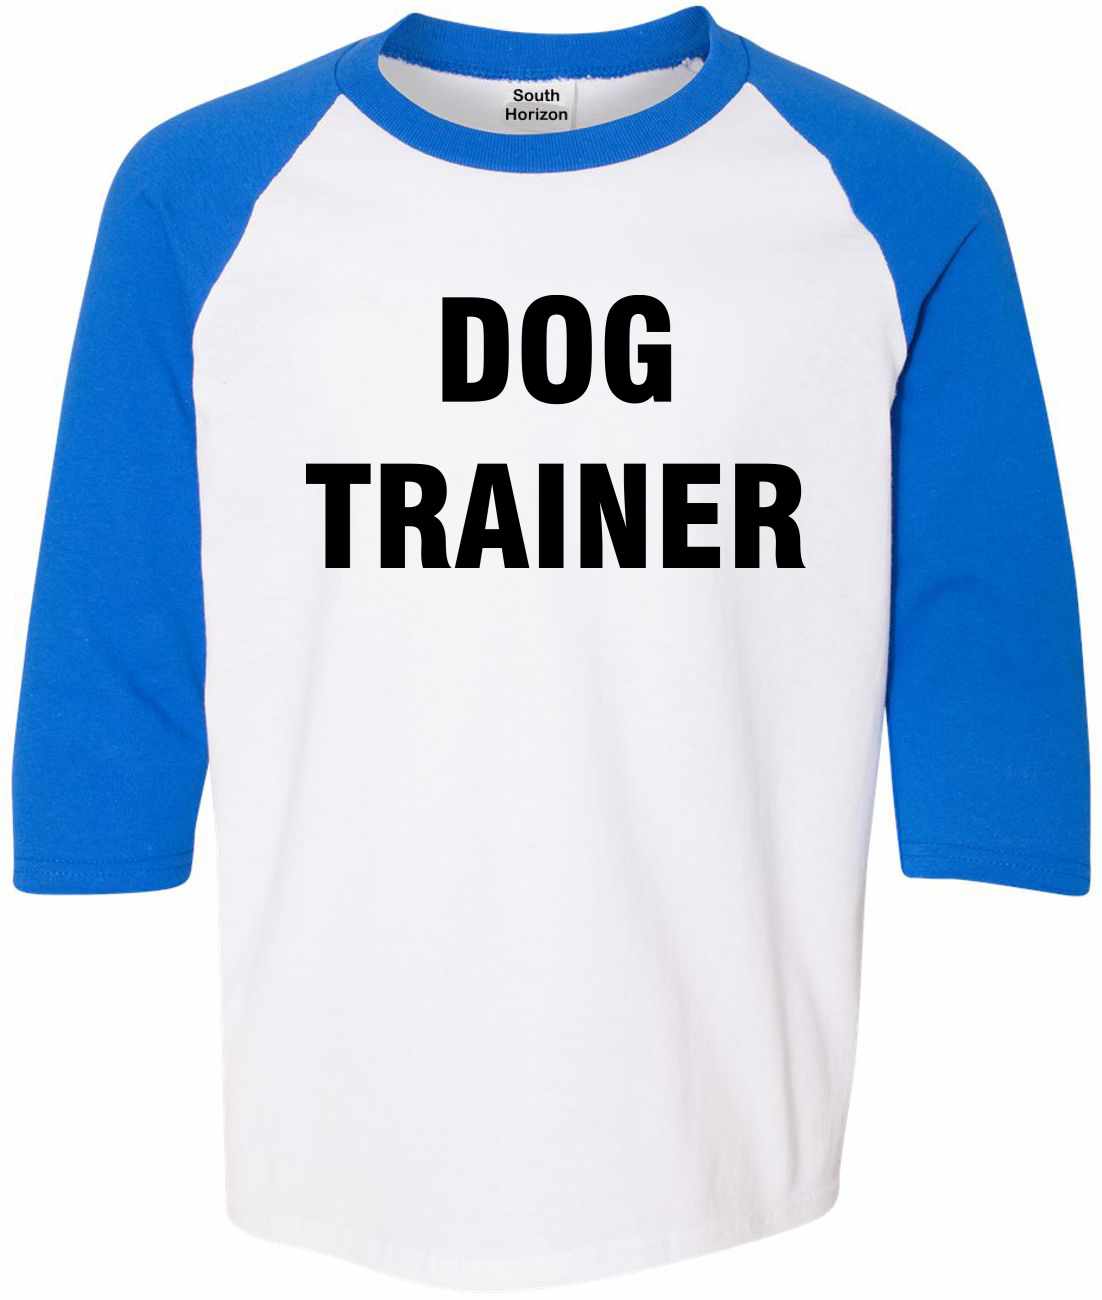 DOG TRAINER on Youth Baseball Shirt